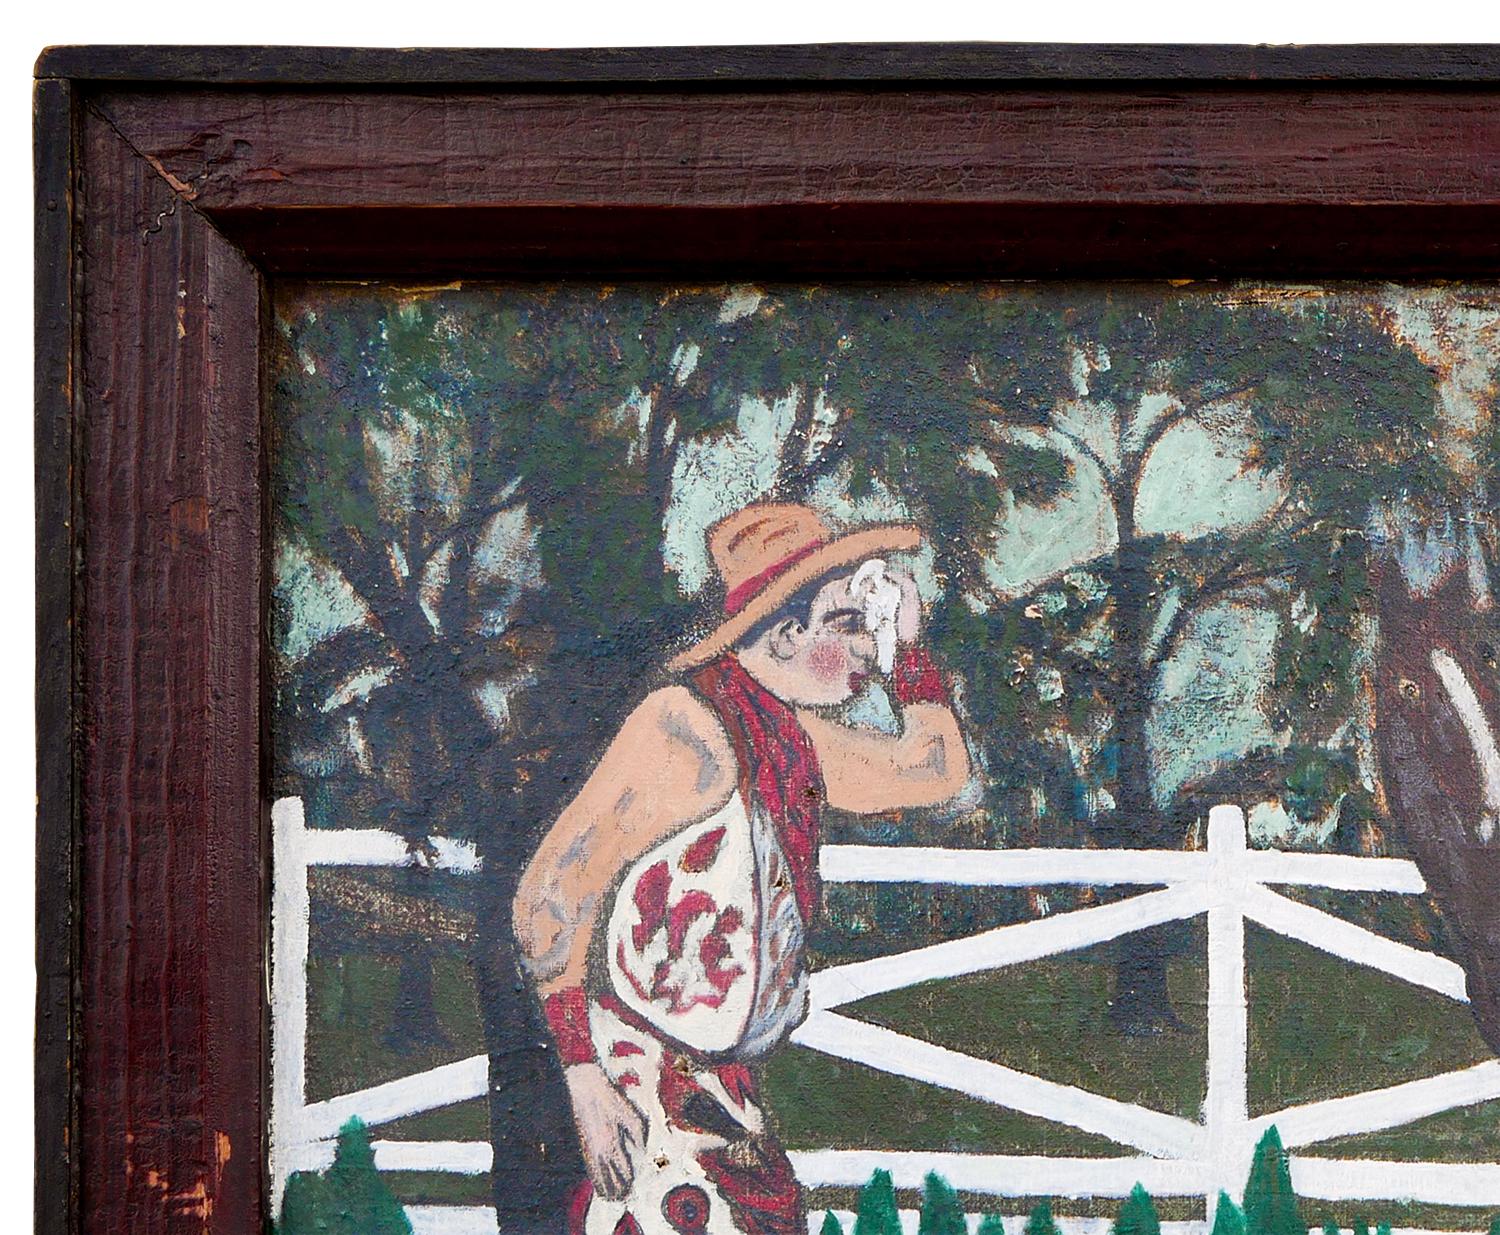 Abstraktes Volkskunstgemälde einer Westernszene von einem unbekannten Künstler. Das Werk zeigt einen Cowboy mit Sporen in einem Korral mit einer weißen Bulldogge und einem Pferdegespann vor einem Hain aus grünen Bäumen. Derzeit in einem braunen